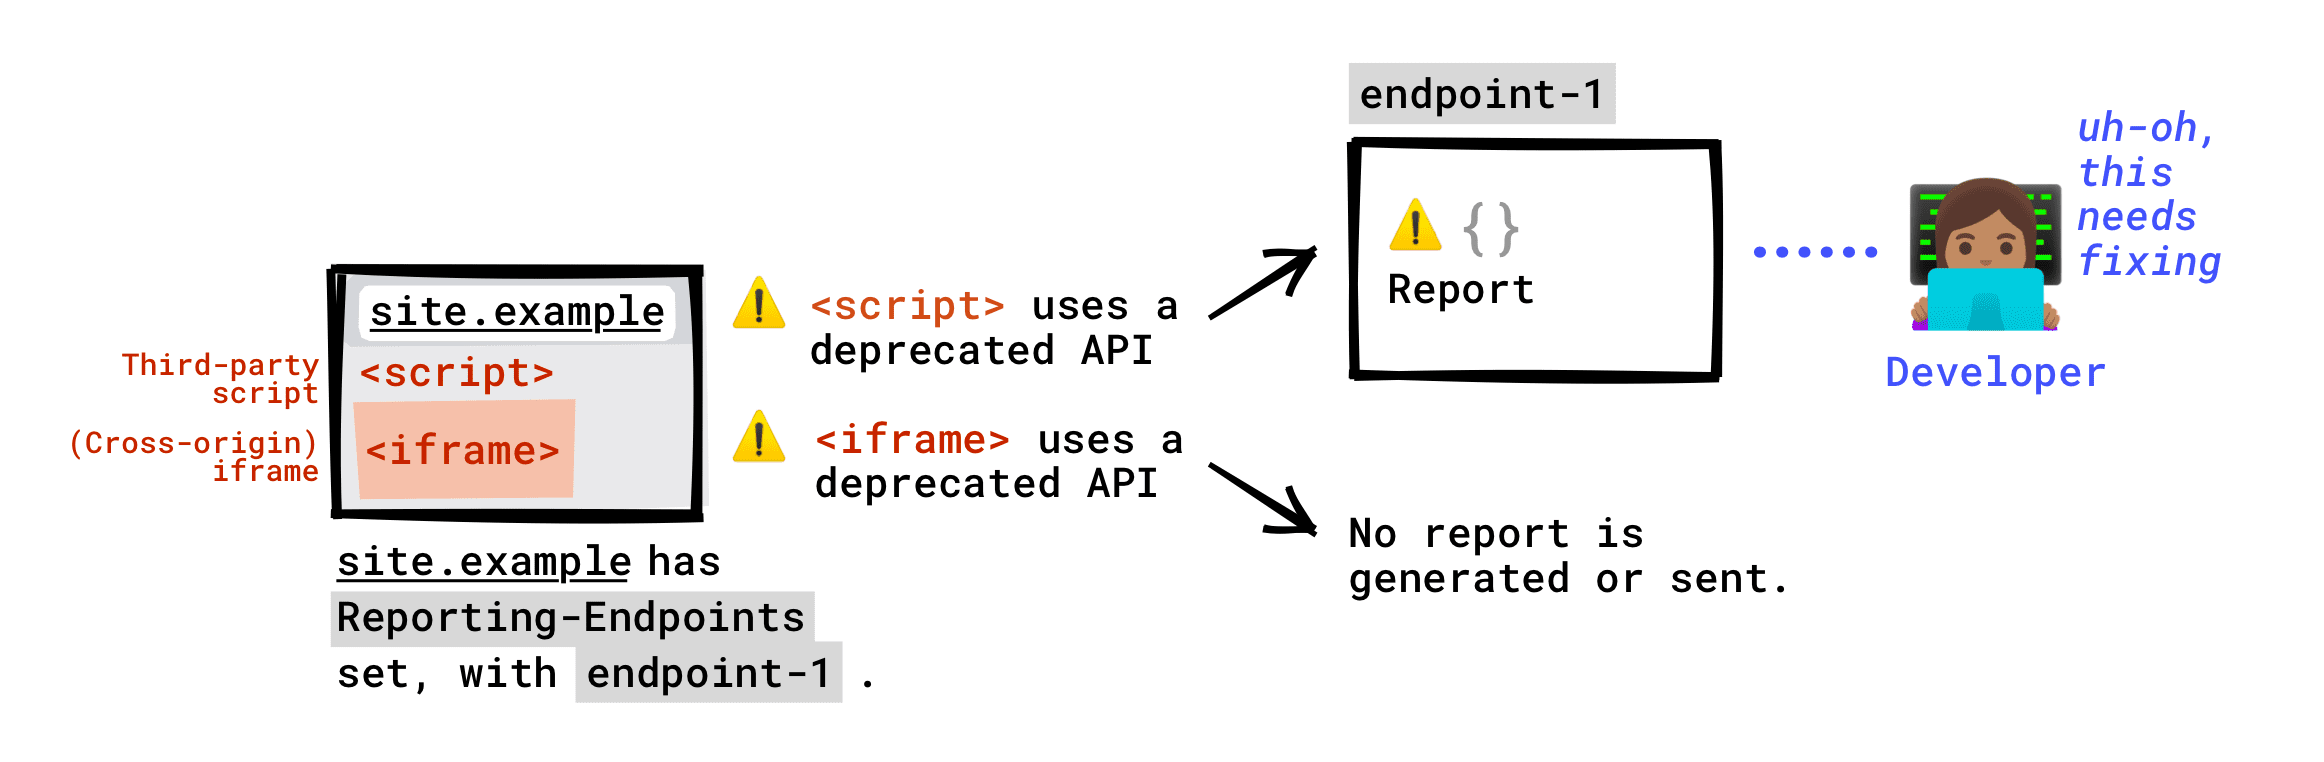 אם הכותרת Reporting-Endpoints מוגדרת בדף: ממשק API שהוצא משימוש, שנקרא על ידי סקריפטים של צד שלישי שפועלים בדף שלכם, ידווח בנקודת הקצה שלכם. API שהוצא משימוש שנקרא על ידי iframe שמוטמע בדף לא ידווח לנקודת הקצה שלכם. דוח על הוצאה משימוש יופק רק אם שרת ה-iframe הגדיר נקודות קצה לדיווח, והדוח הזה יישלח לנקודת הקצה ששרת ה-iframe הגדיר.